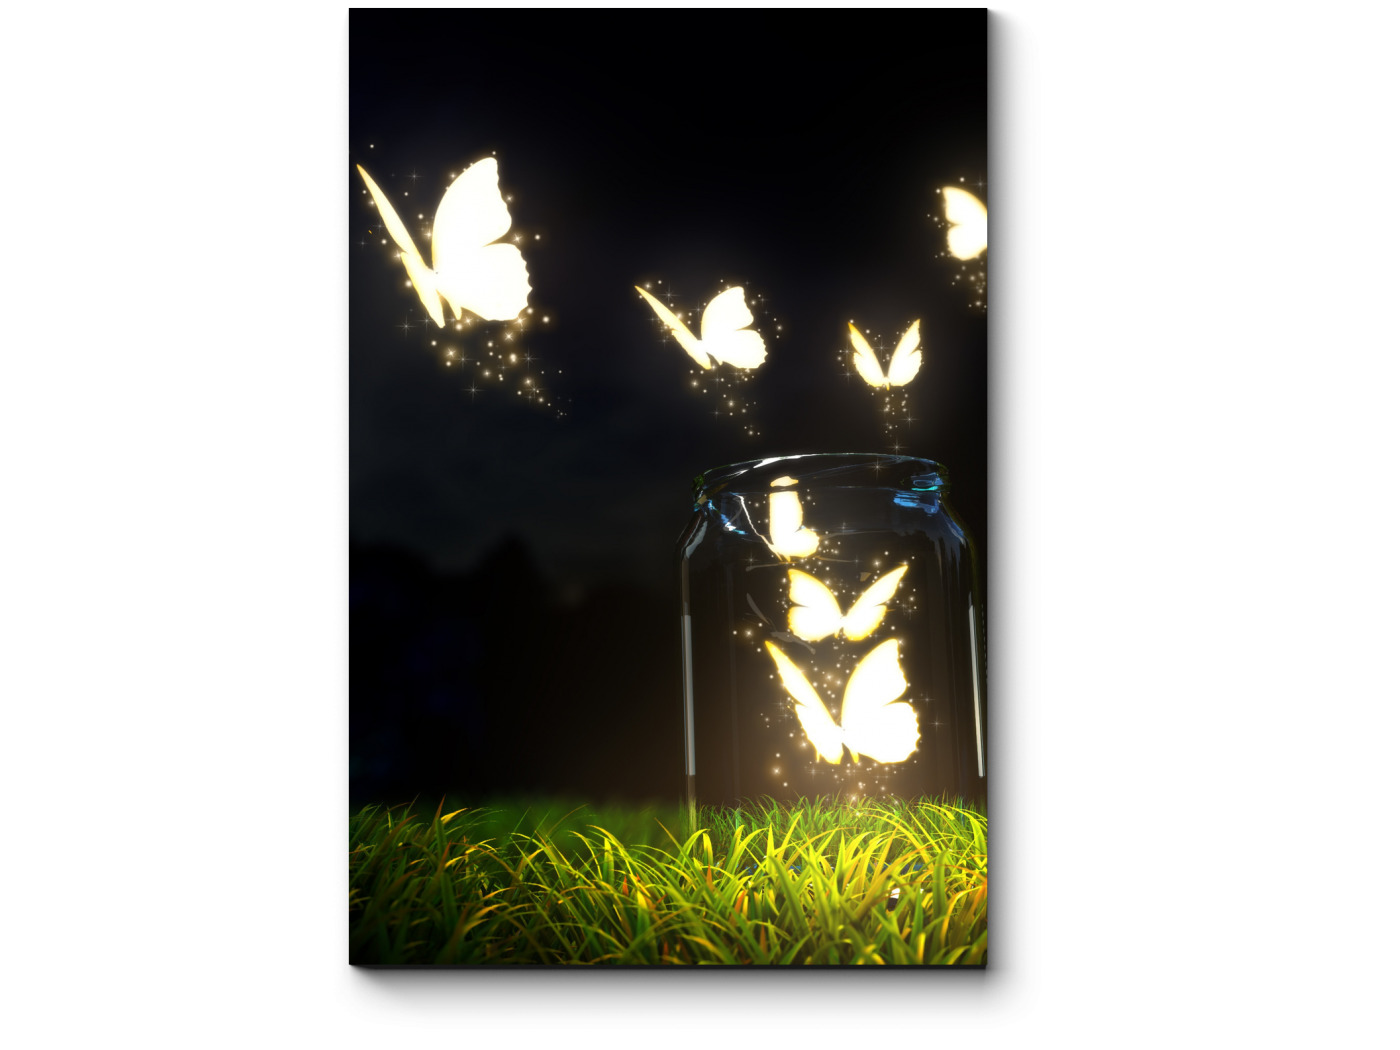 Изображать светиться. Светящиеся бабочки. Пано светится с бабочками.